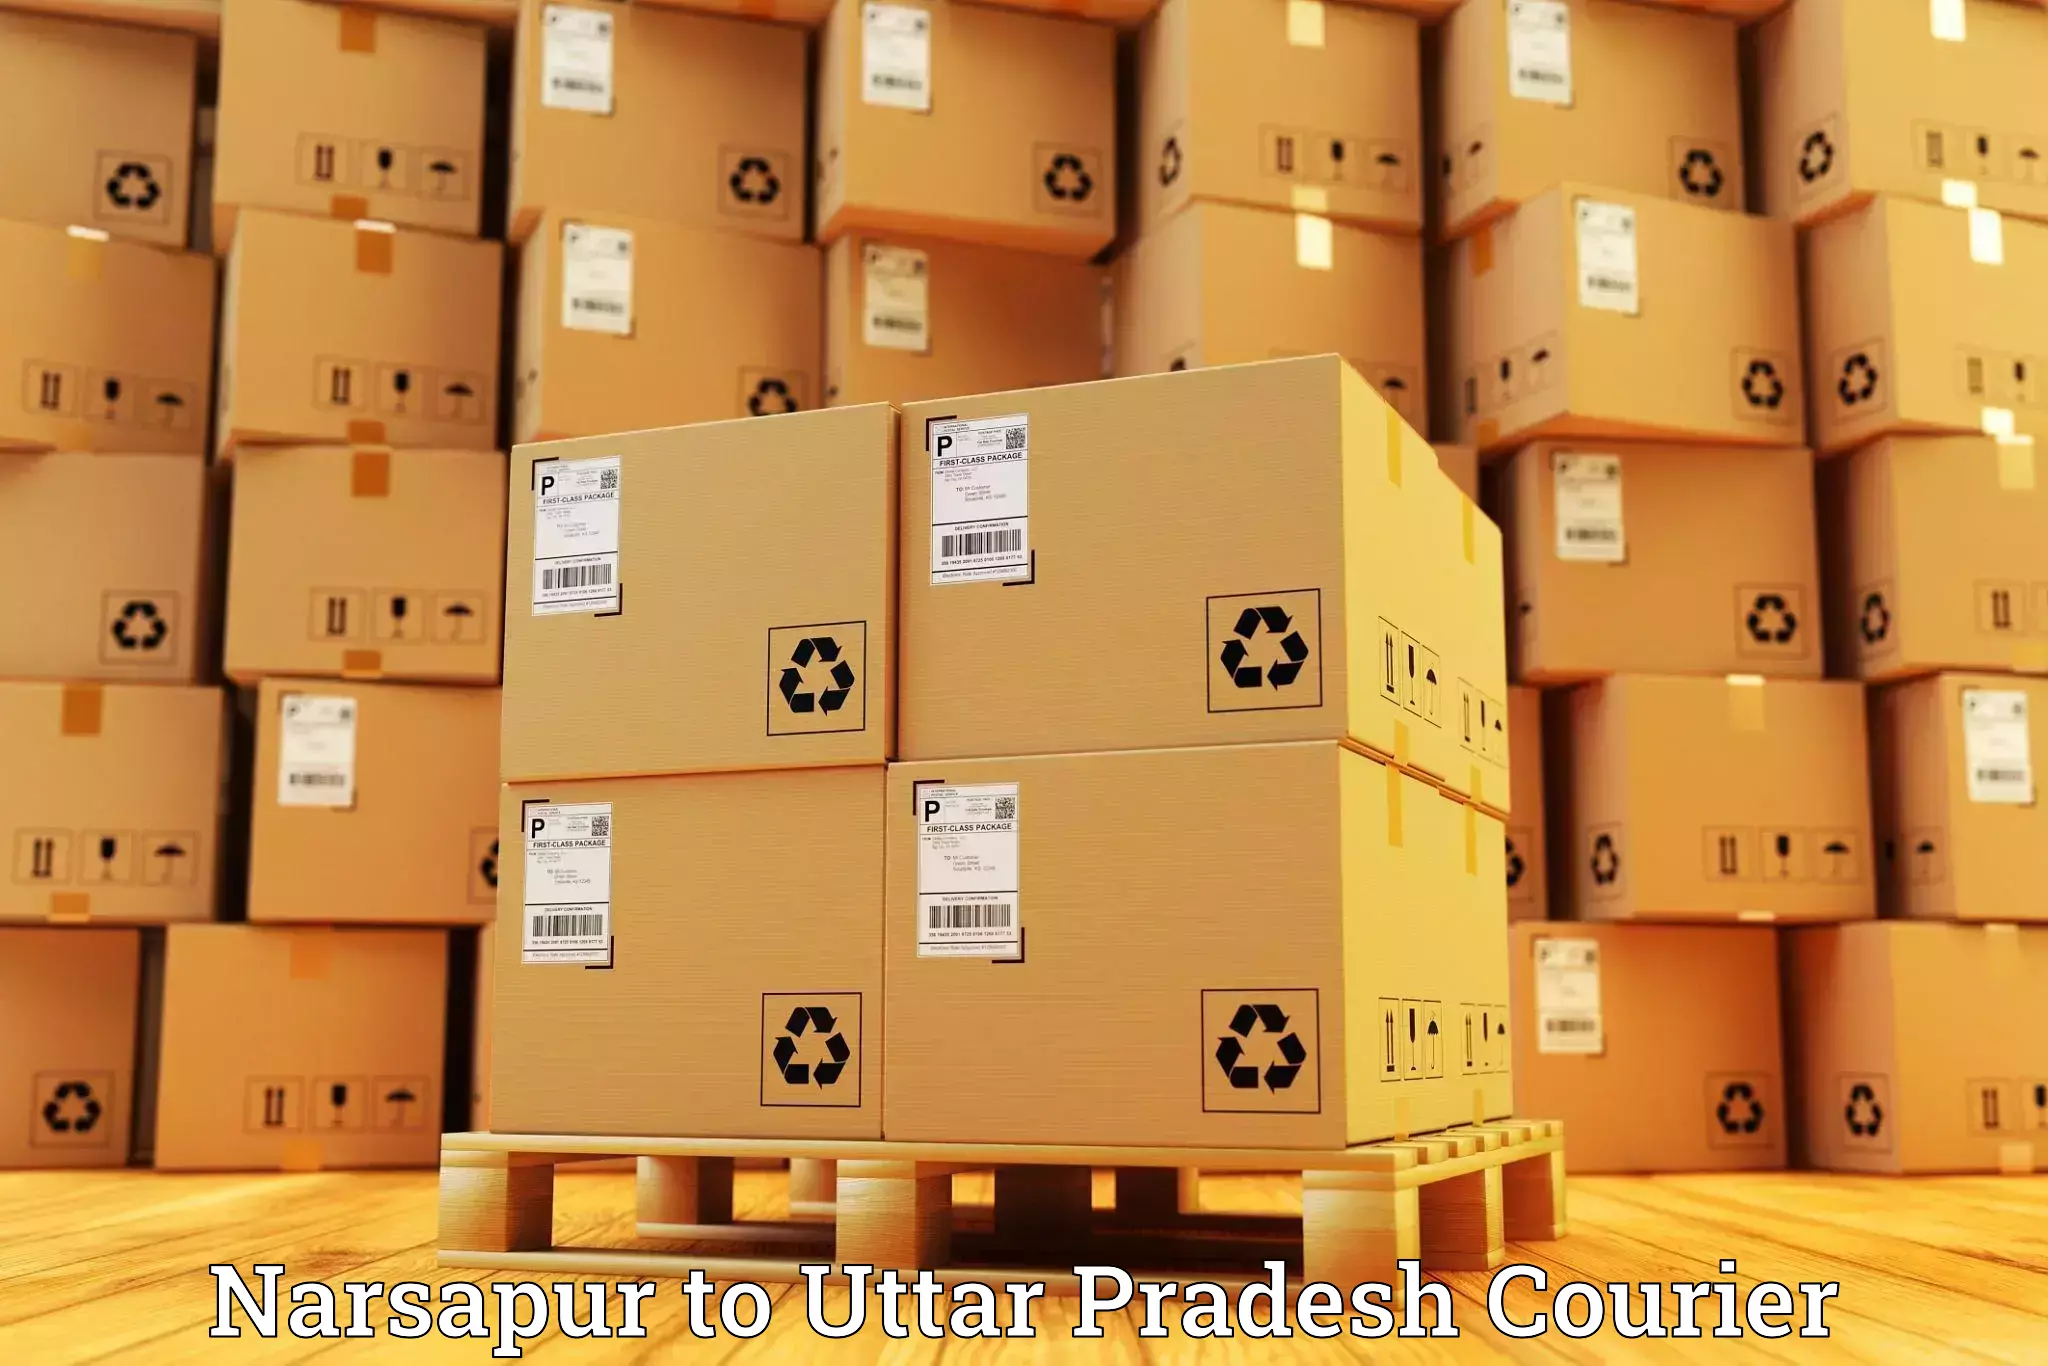 Door-to-door freight service Narsapur to Aunrihar